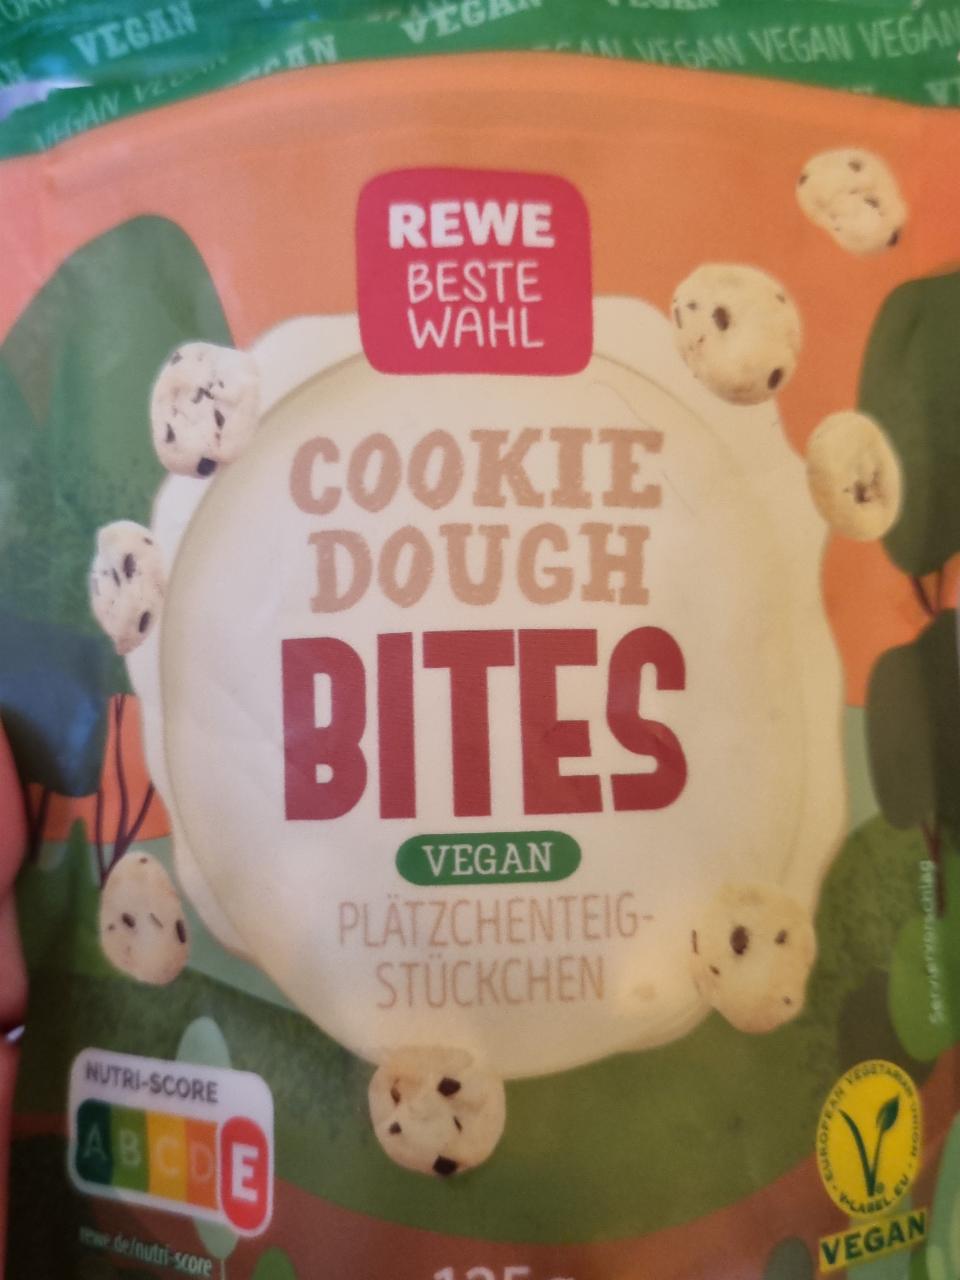 Fotografie - Cookie Dough Bites Vegan Rewe Beste Wahl